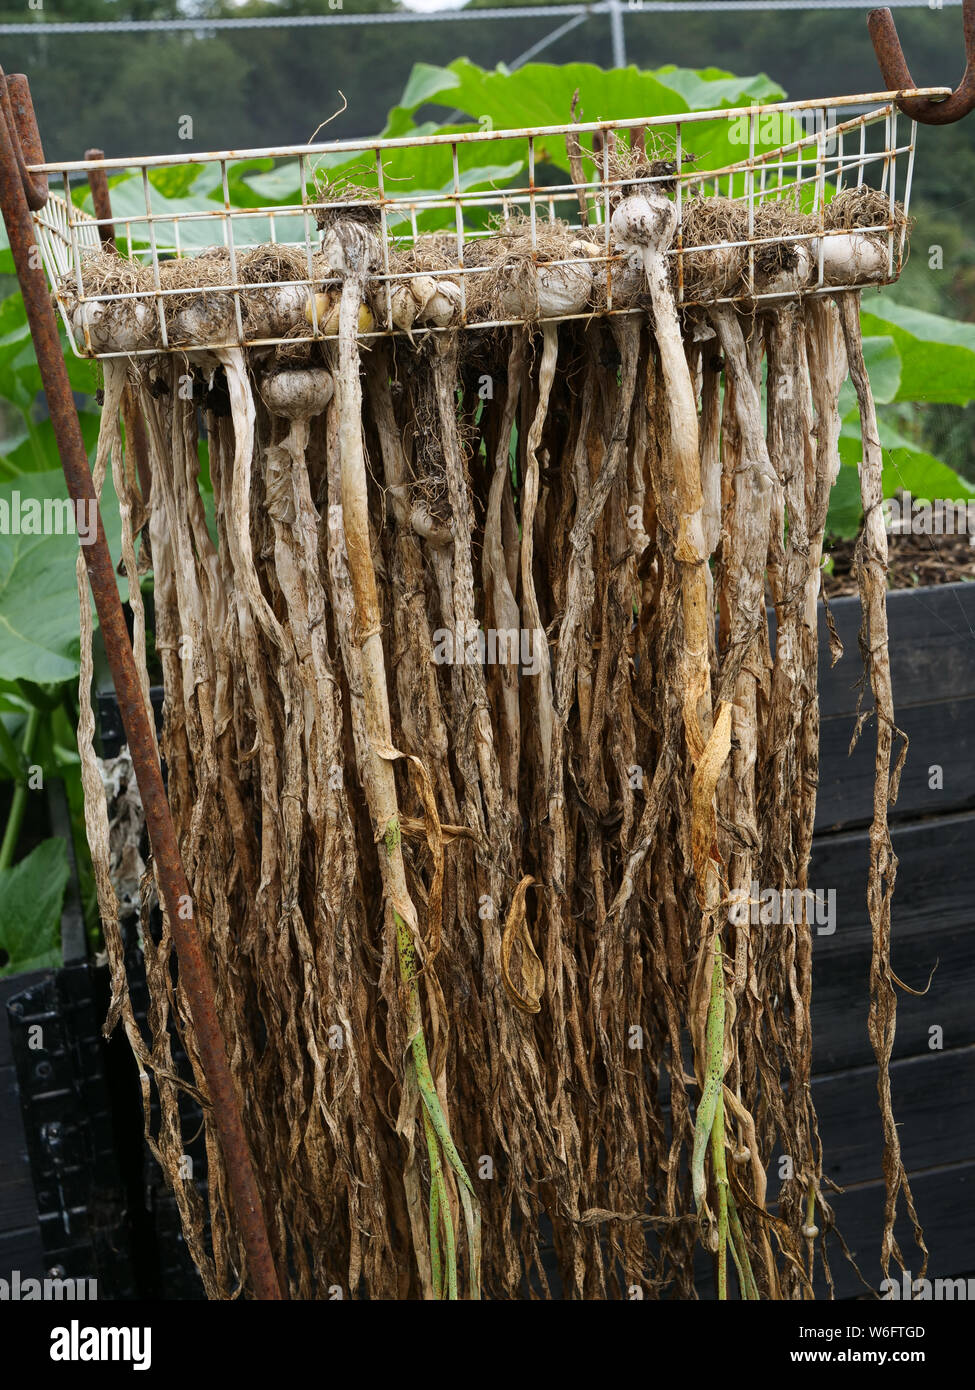 Aglio, coltivate su un riparto in Londra, Regno Unito, appeso a testa in giù da una rastrelliera per essiccazione o indurimento, dopo la raccolta in luglio. Foto Stock